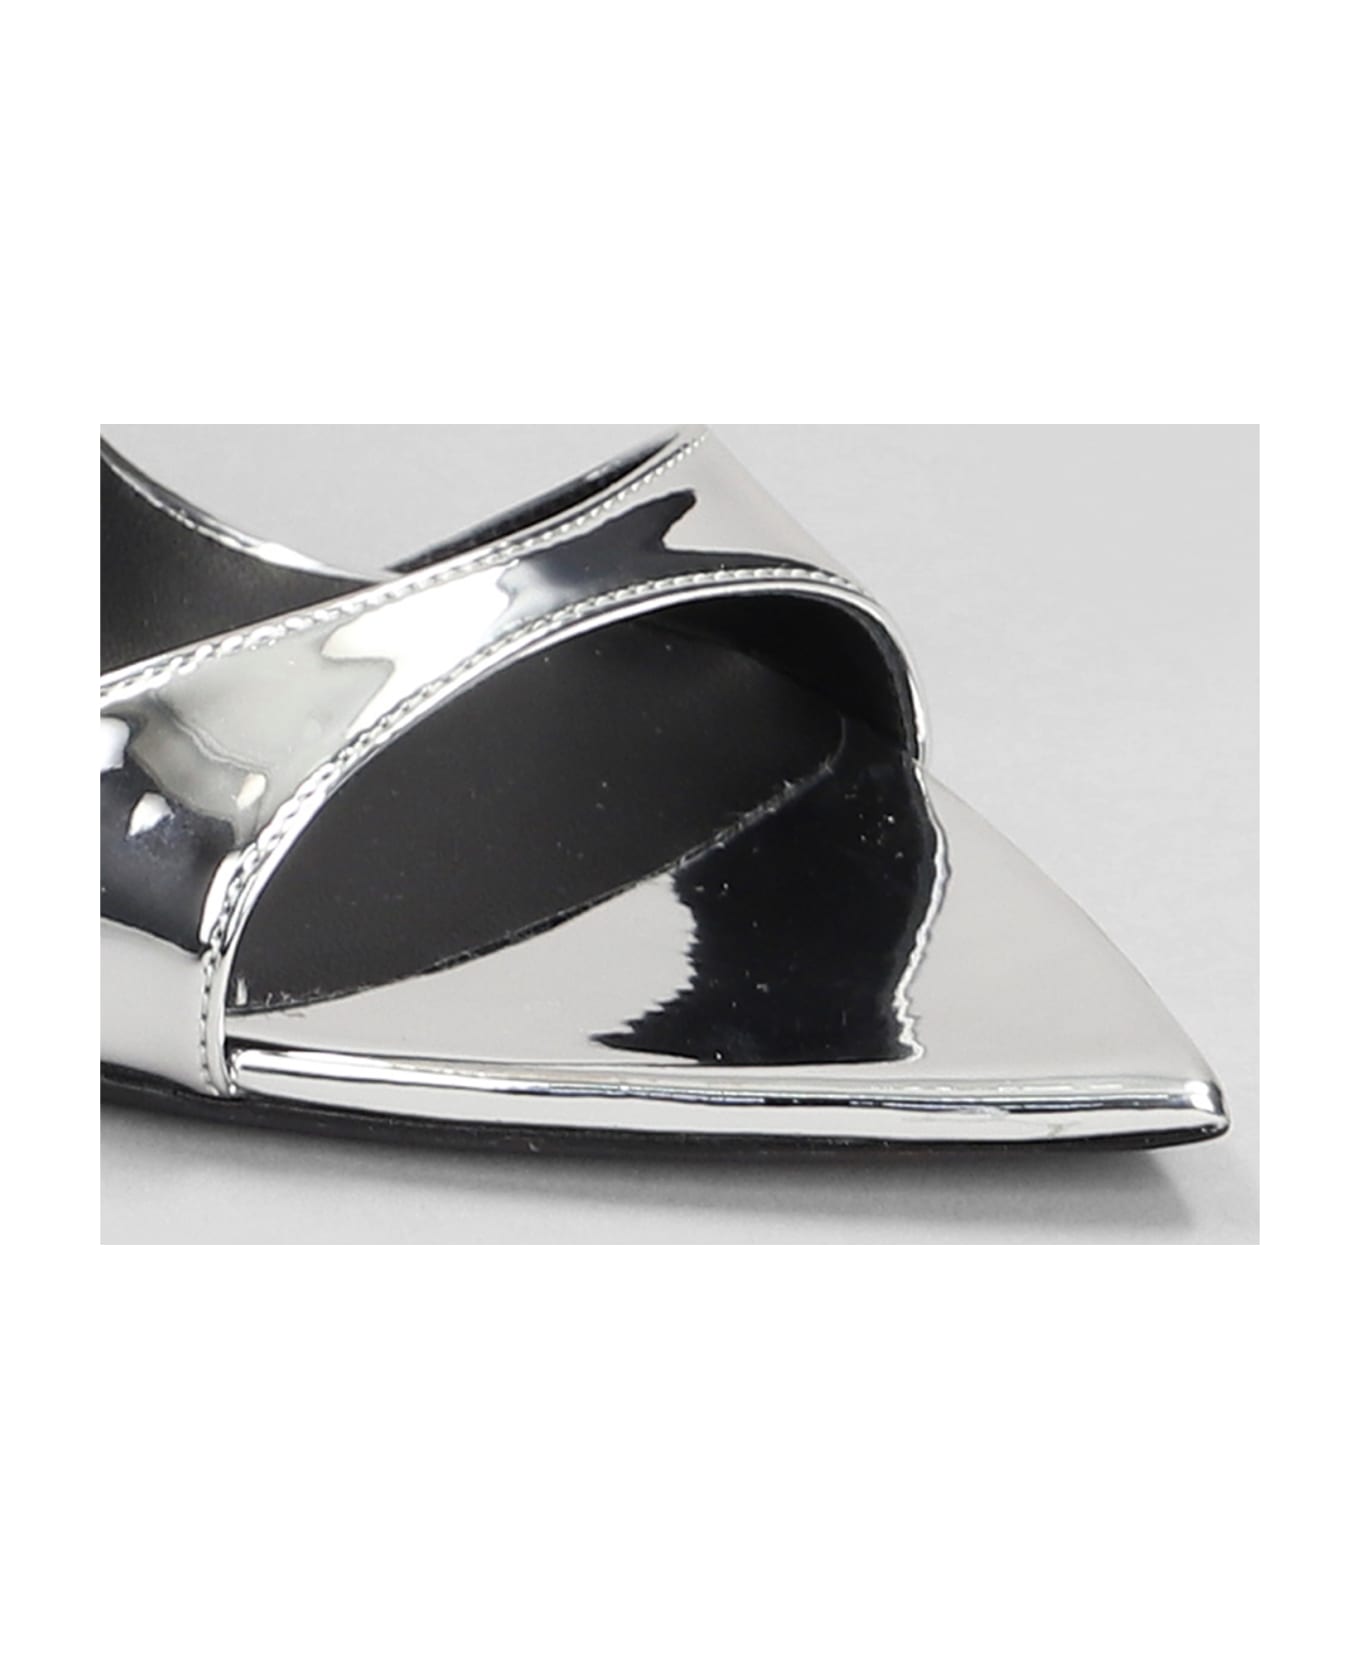 Giuseppe Zanotti Intrigo Strap Sandals In Silver Patent Leather - silver